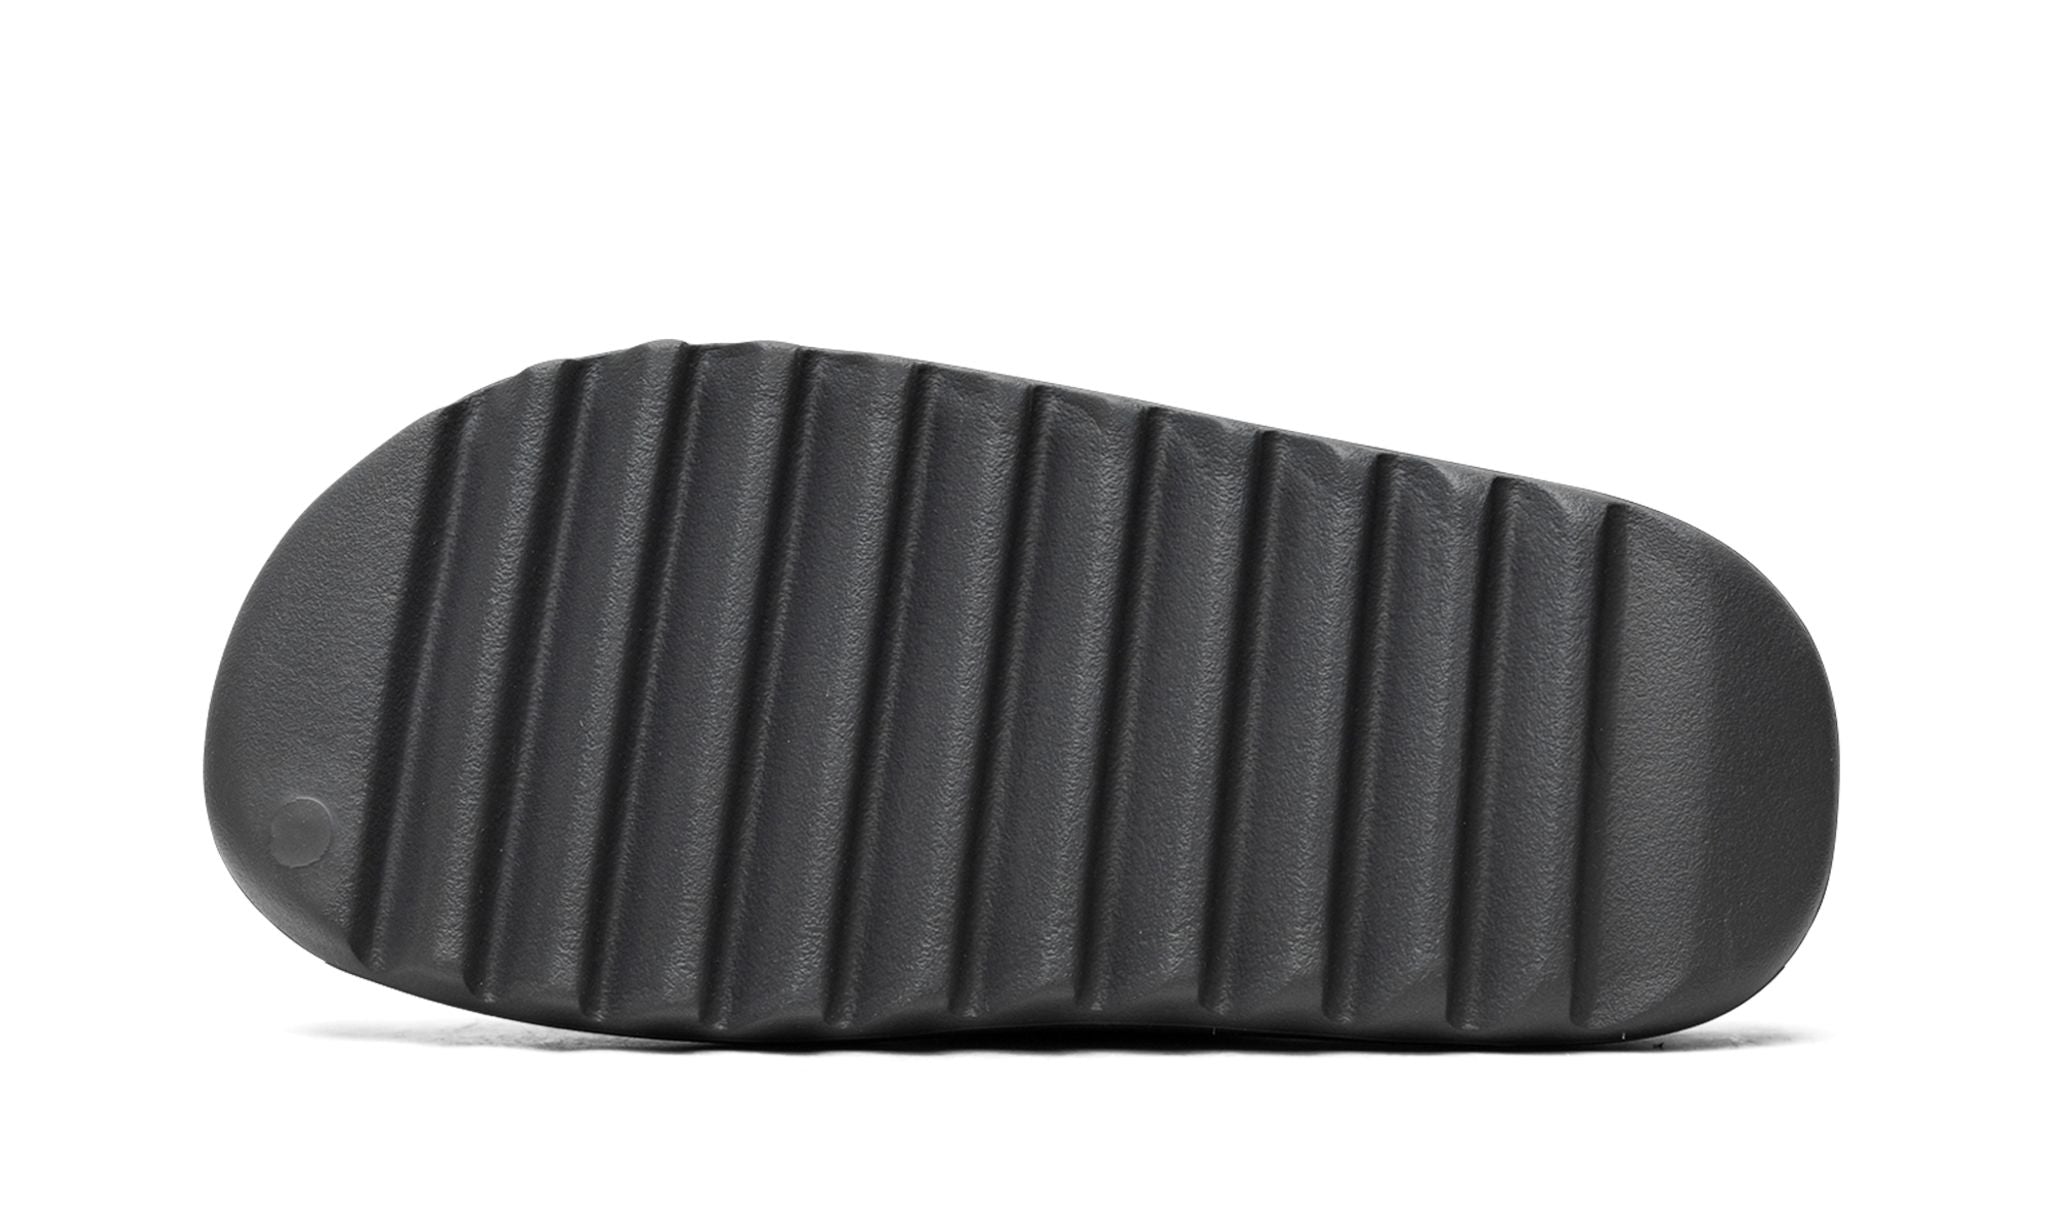 Adidas Yeezy Slide Slate Grey 'Cinza'